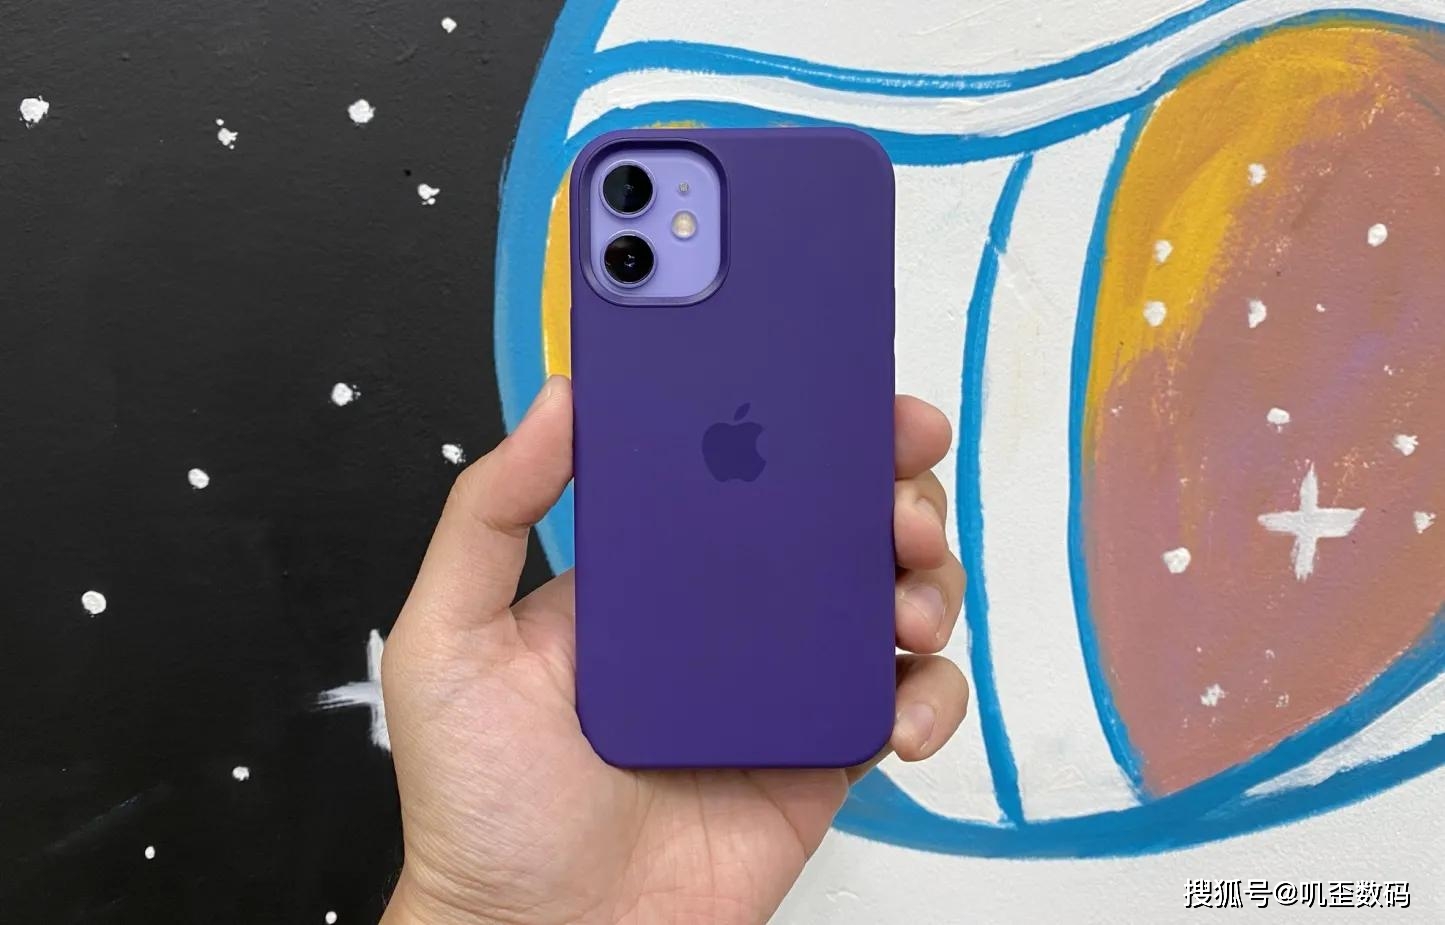 劝你今年别买这款苹果手机 Iphone 12紫色版使用后的体验报告 版本